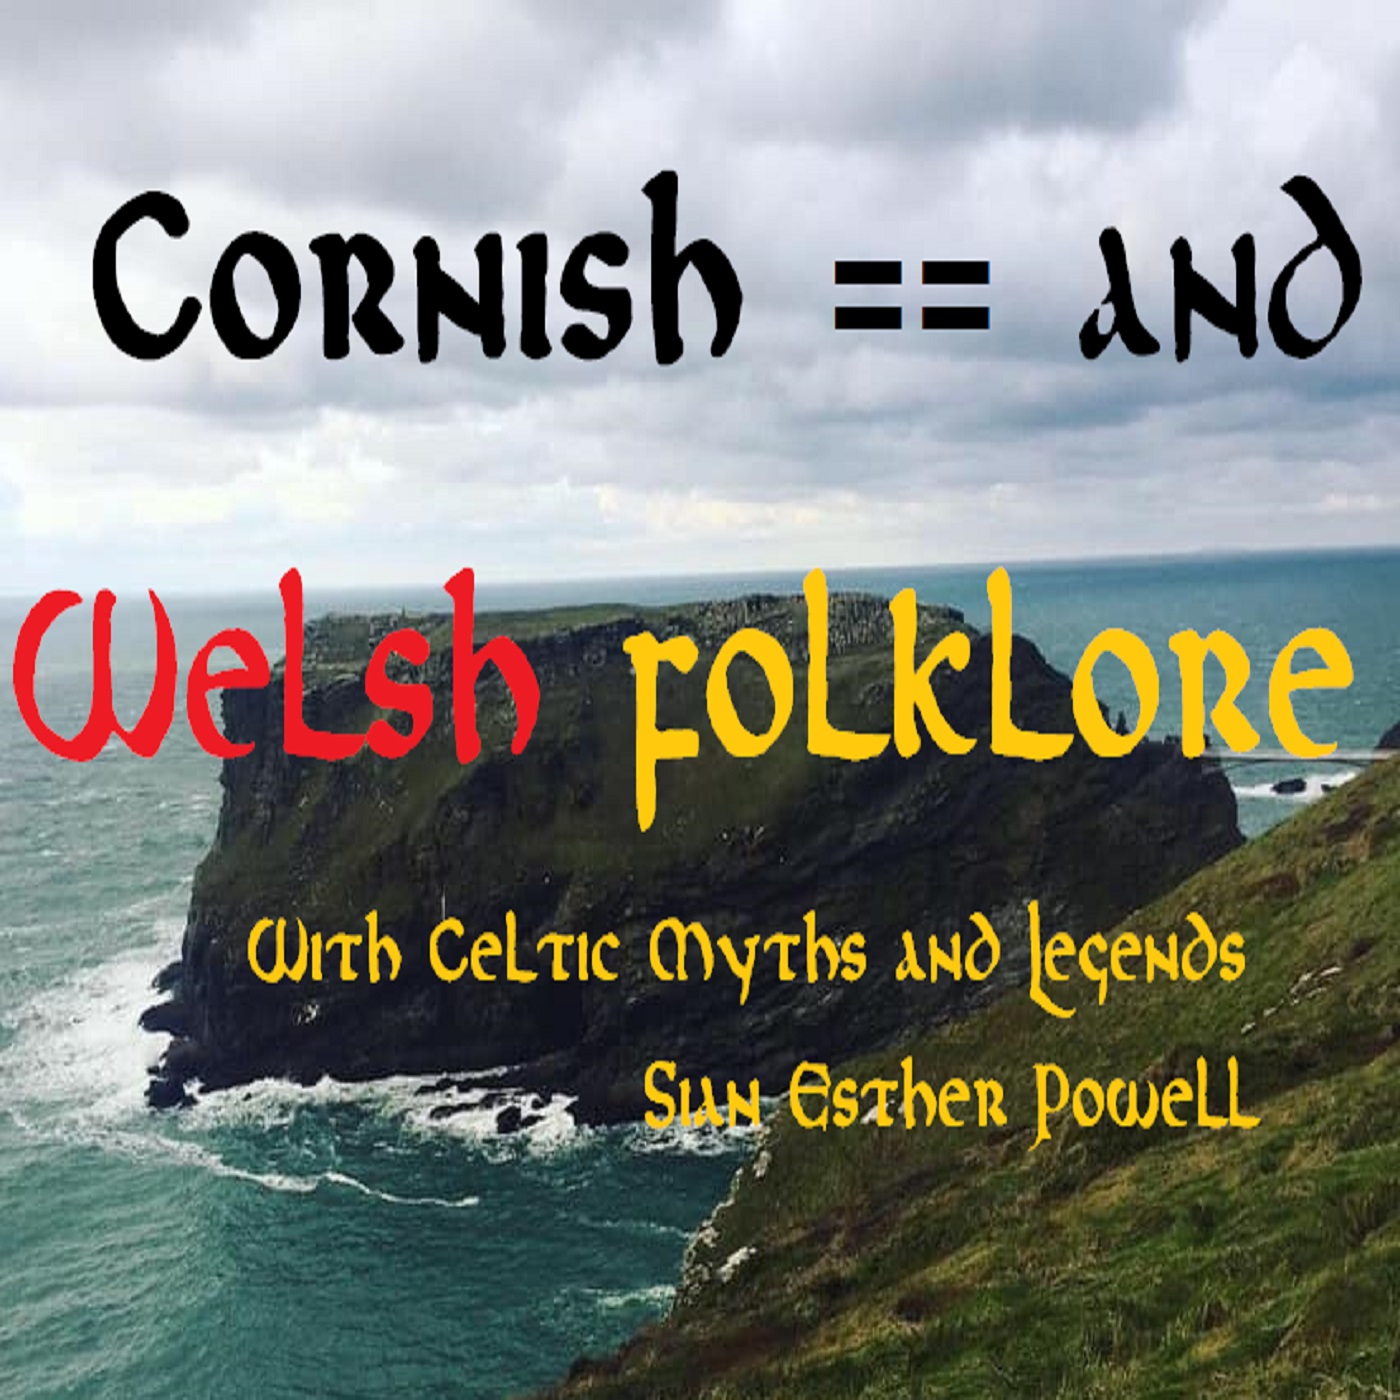 Cornish & Welsh Folklore - Celtic Myths & Legends